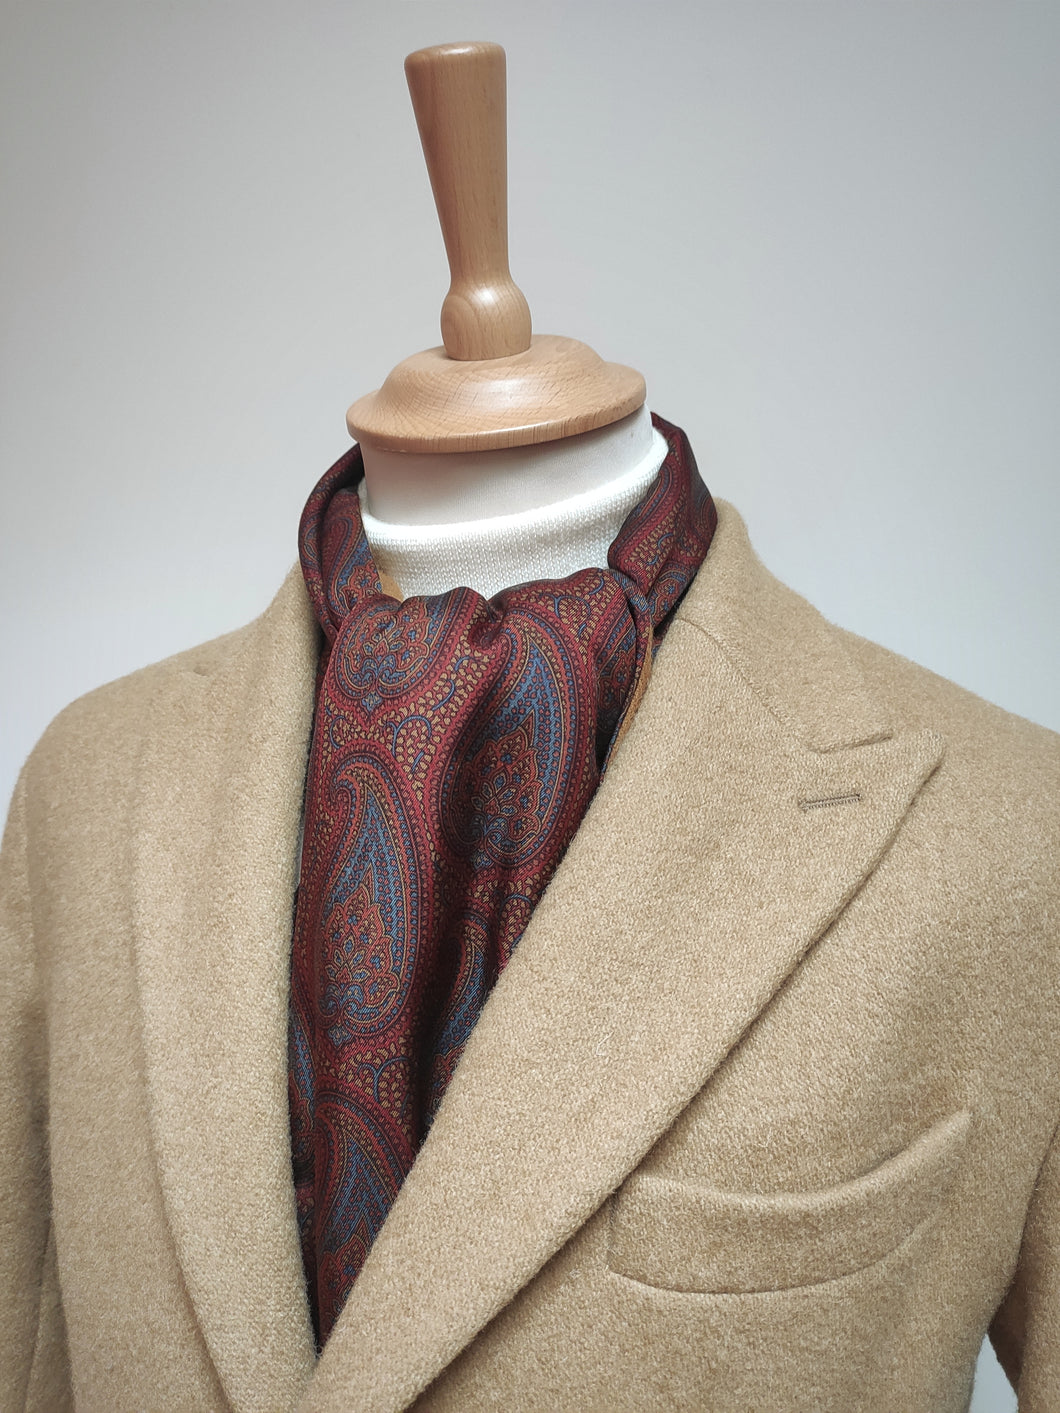 Vivax by Sambrook Witting écharpe vintage double face à motif paisley en laine et soie Made in England